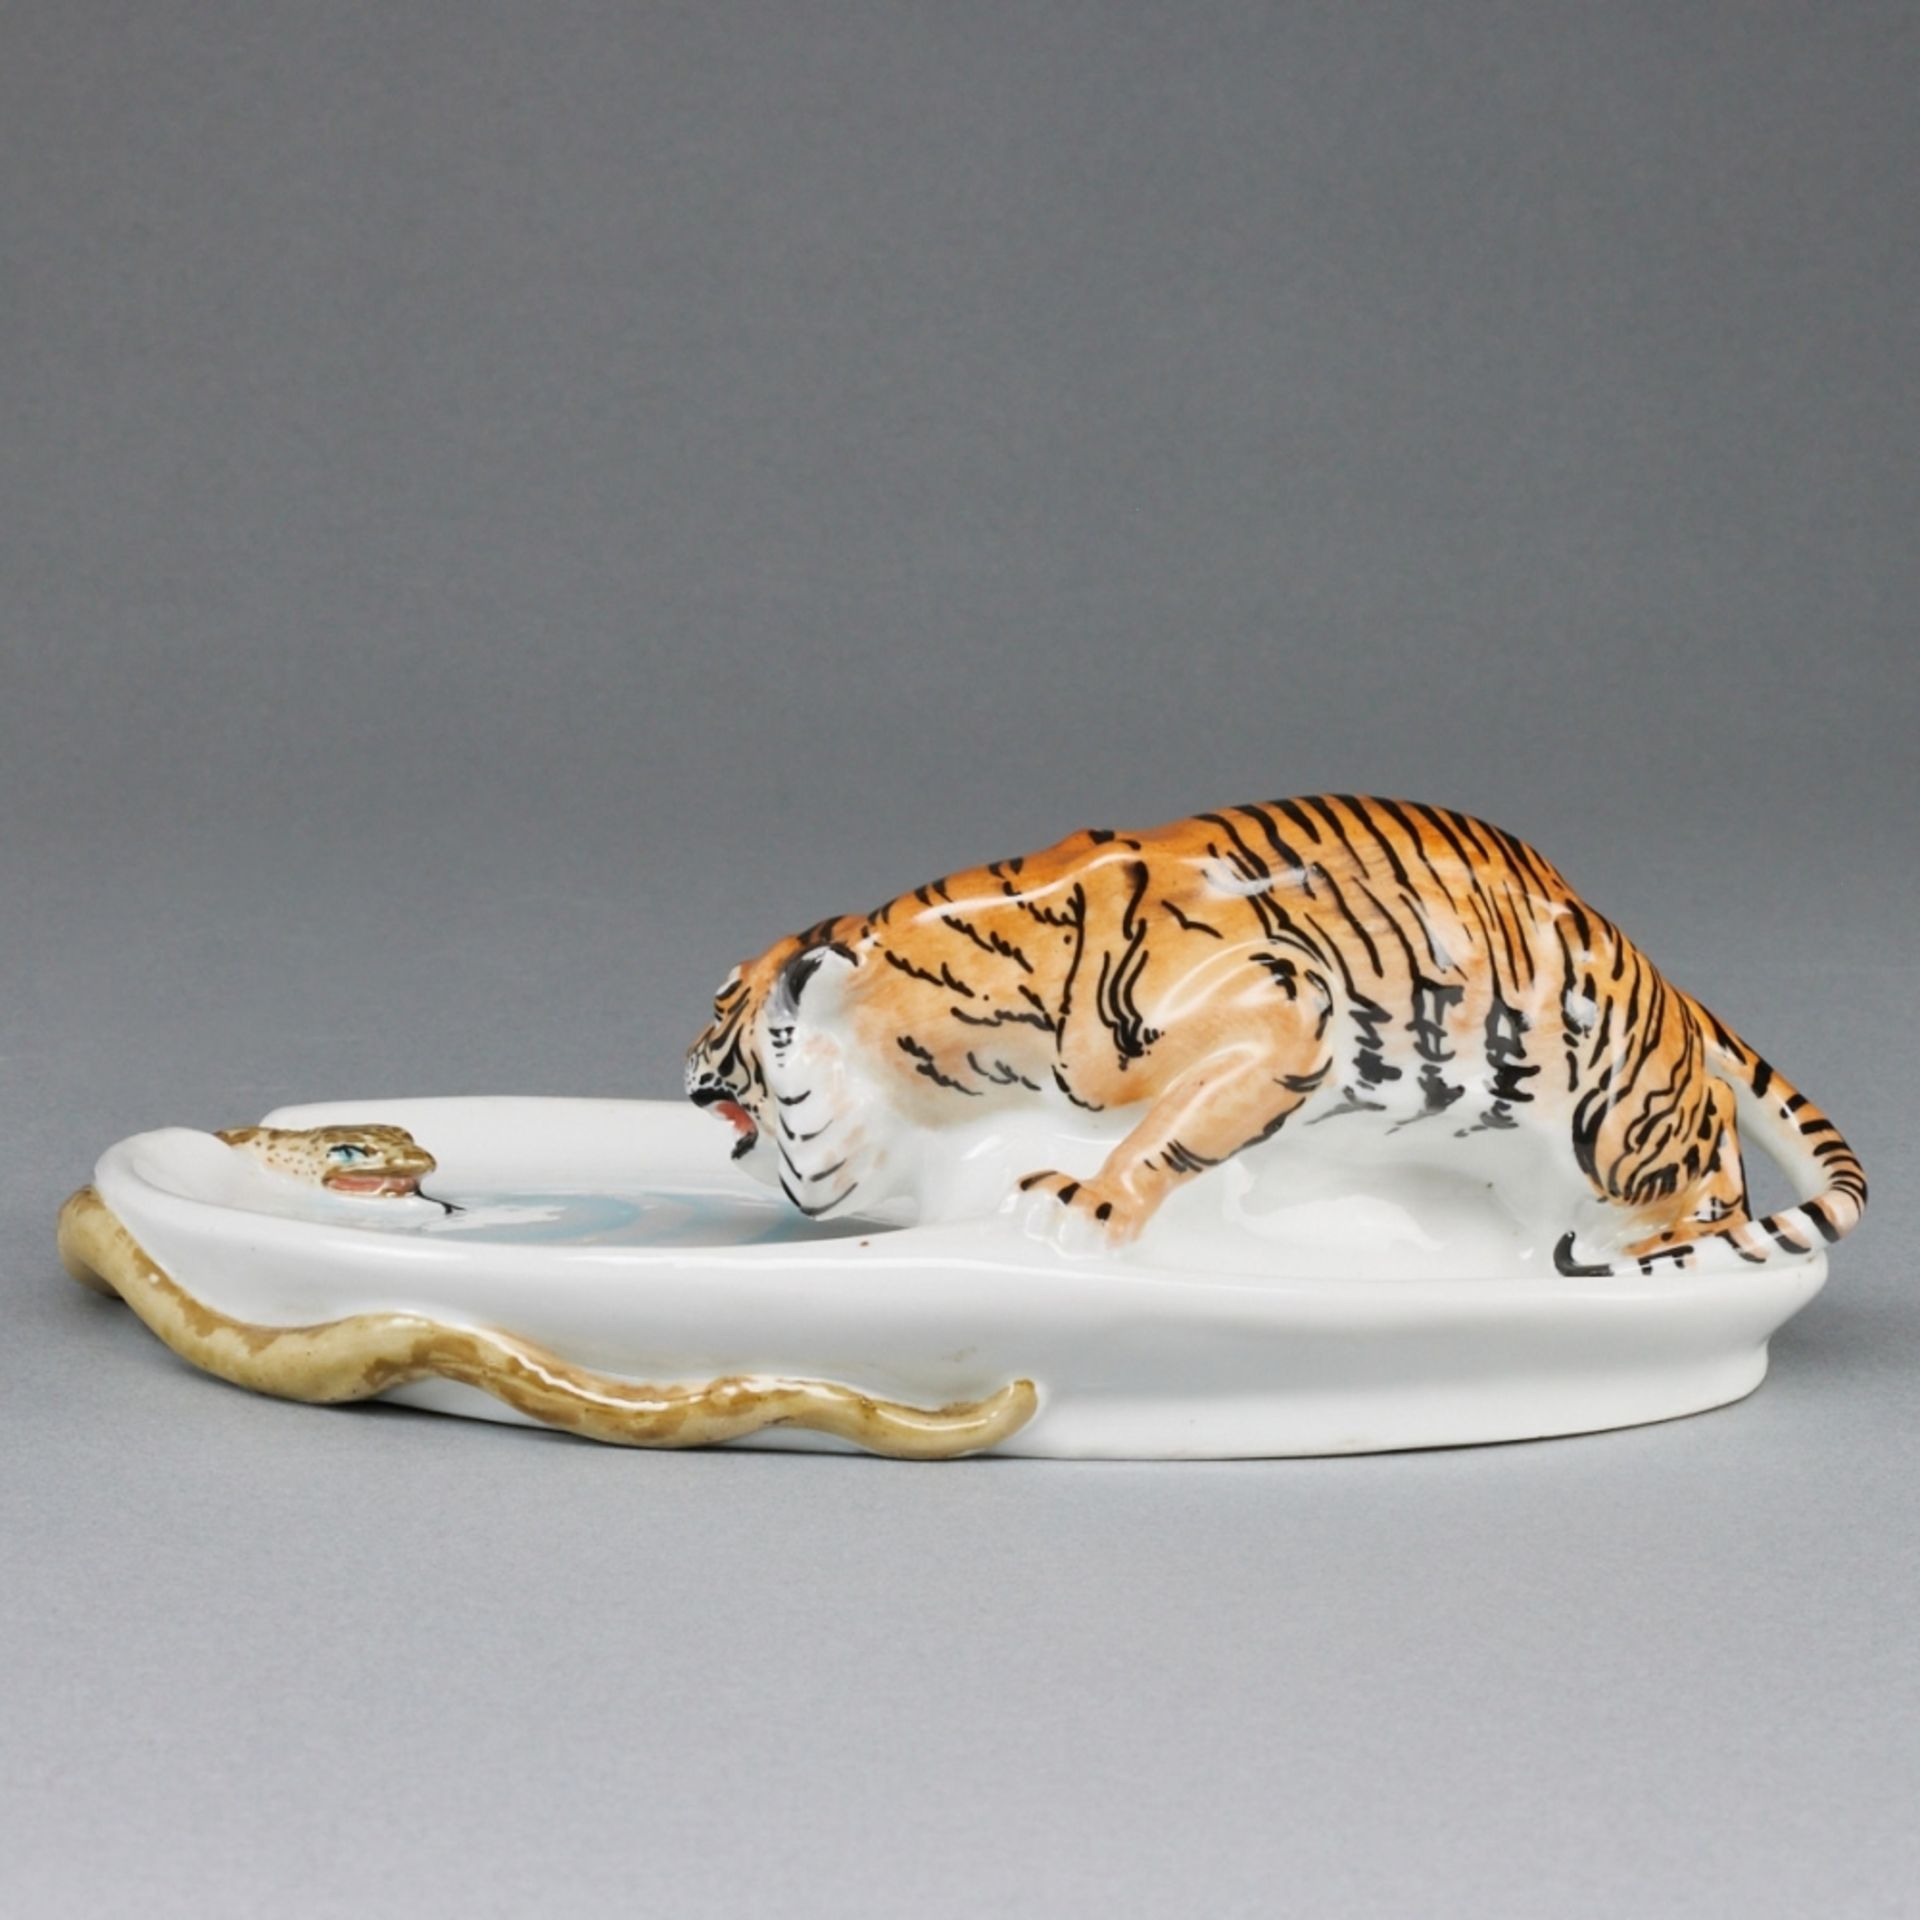 Aschenschale mit Tiger und Schlange. Meißner Ofen- und Porzellanfabrik, vorm. Carl Teichert um 1882- - Image 3 of 3